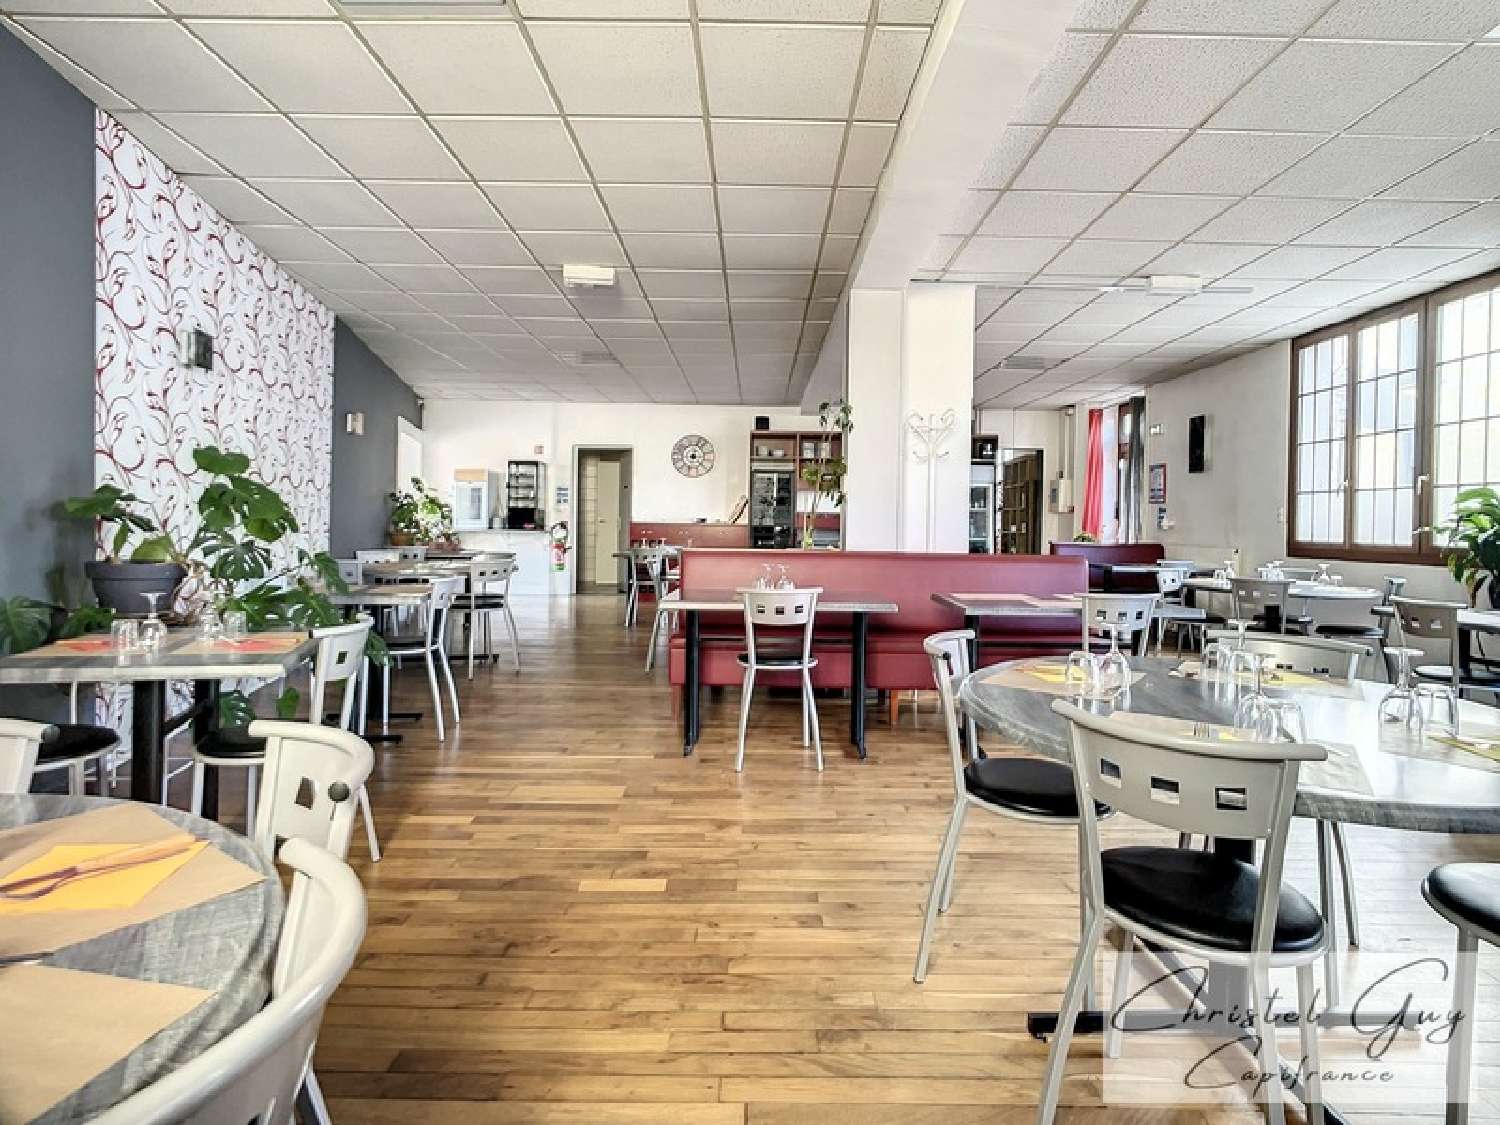  à vendre restaurant Ruillé-sur-Loir Sarthe 2